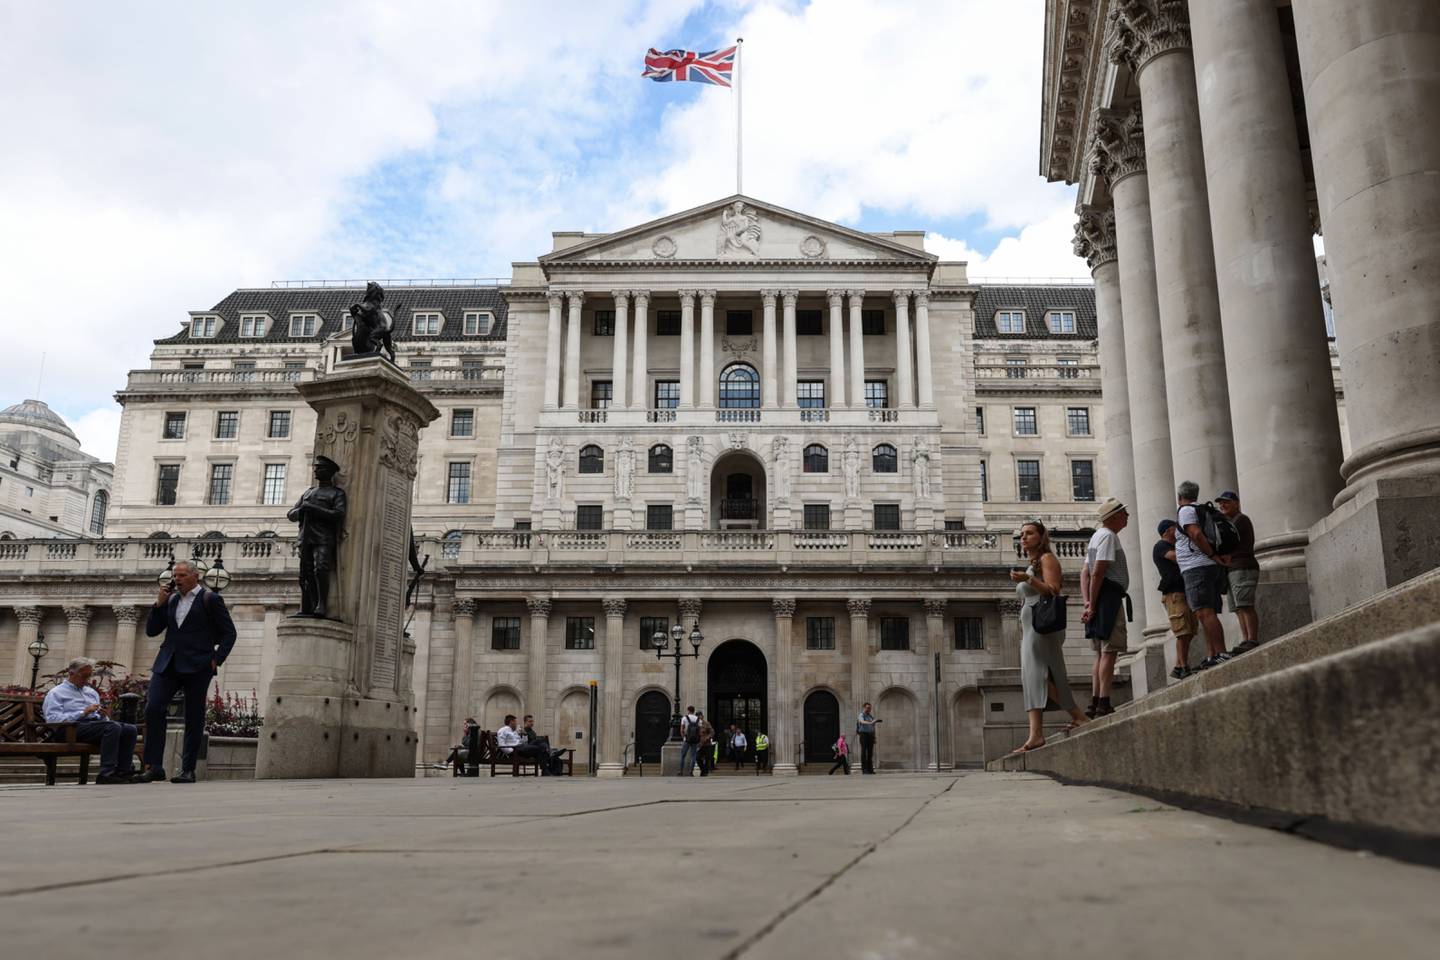 Se espera que el Banco de Inglaterra no cambie su política. Foto: Hollie Adams/Bloomberg.dfd